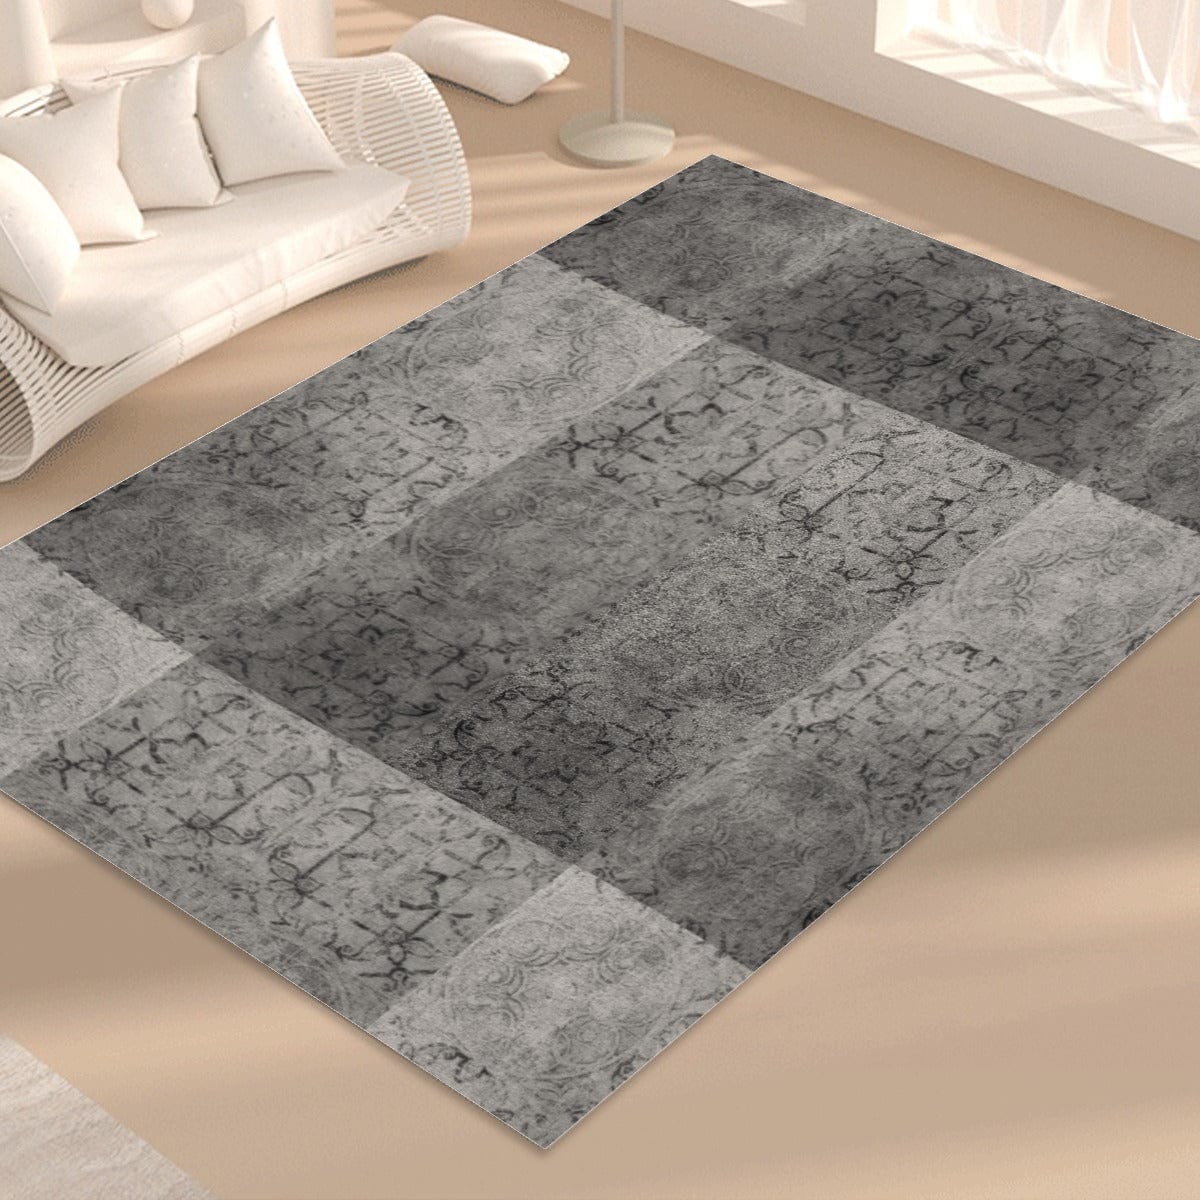 Yoycol Rugs L / White Gray Tile - Foldable Rectangular Floor Mat